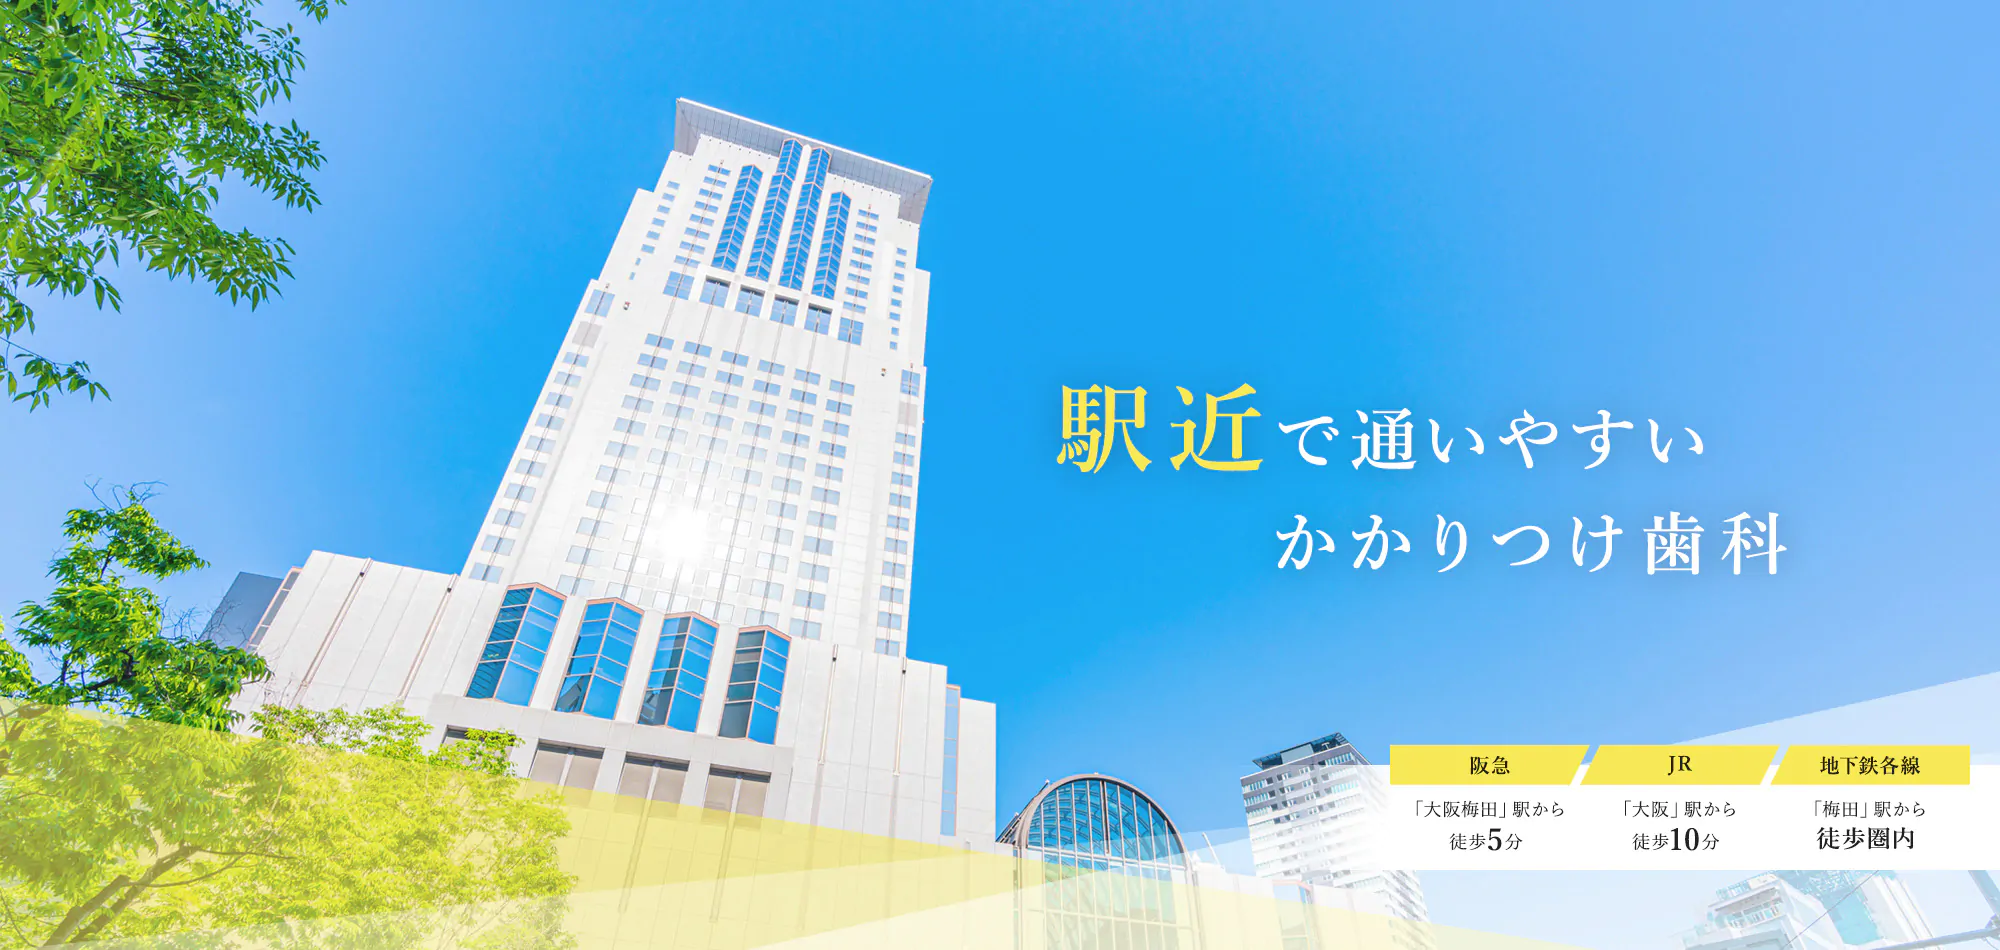 JR「大阪駅」各線「梅田駅」よりすぐ ホテル阪急インターナショナル同ビルのアプローズタワービル7F